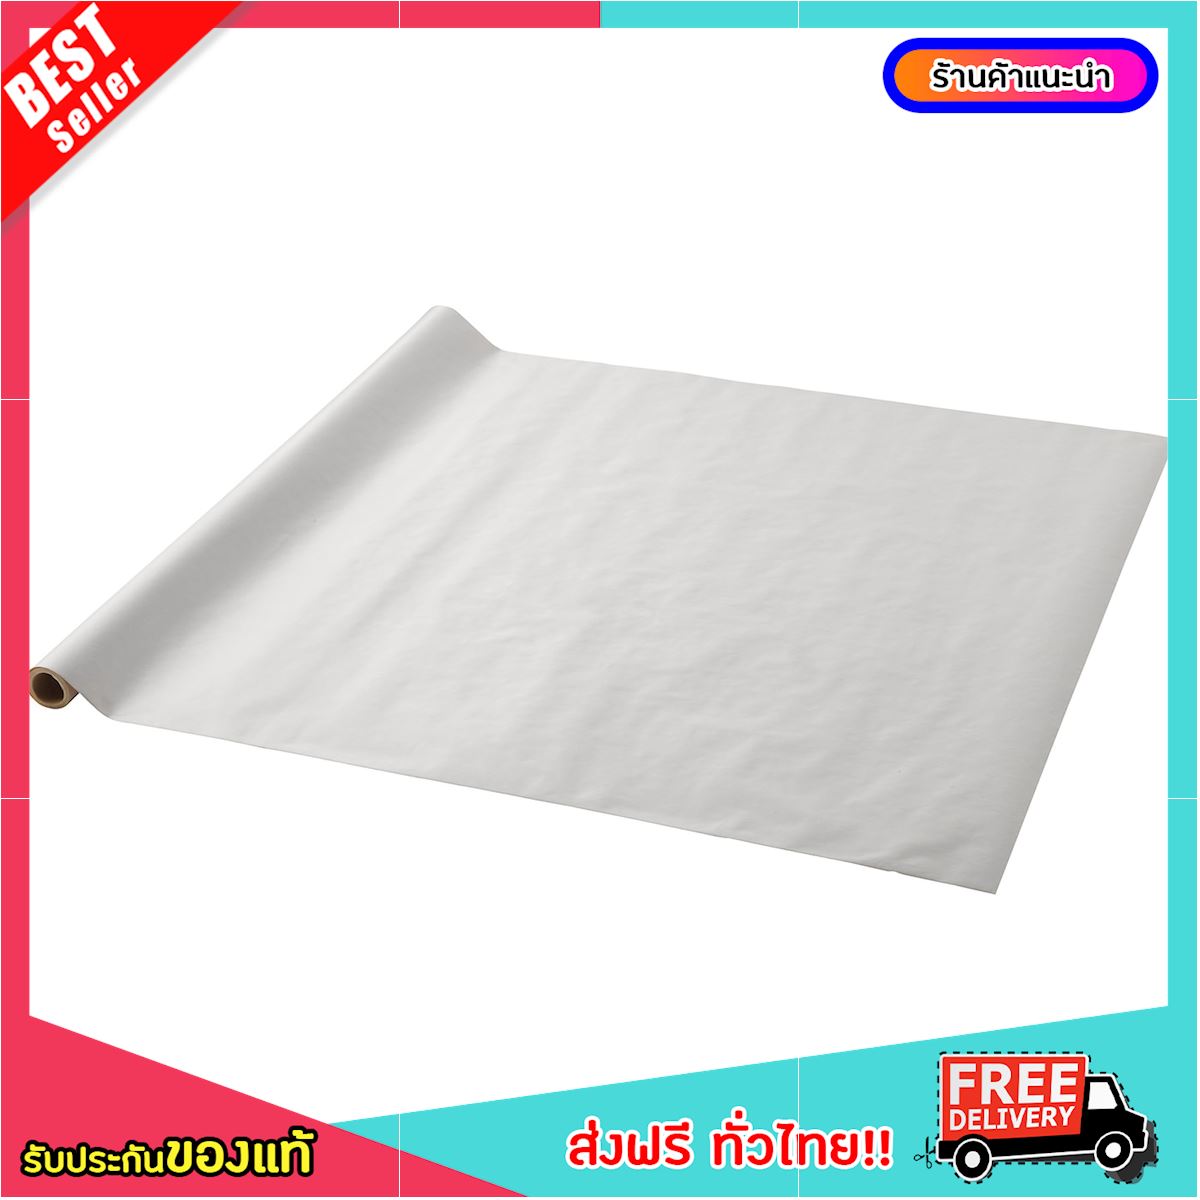 [ซื้อ 1 แถม 1 ฟรี เดือนนี้เท่านั้น] กระดาษห่อของ กระดาษสีขาว กระดาษห่อของขวัญ, ขาว, 5x0.7 ม. [จัดส่งฟรี!]